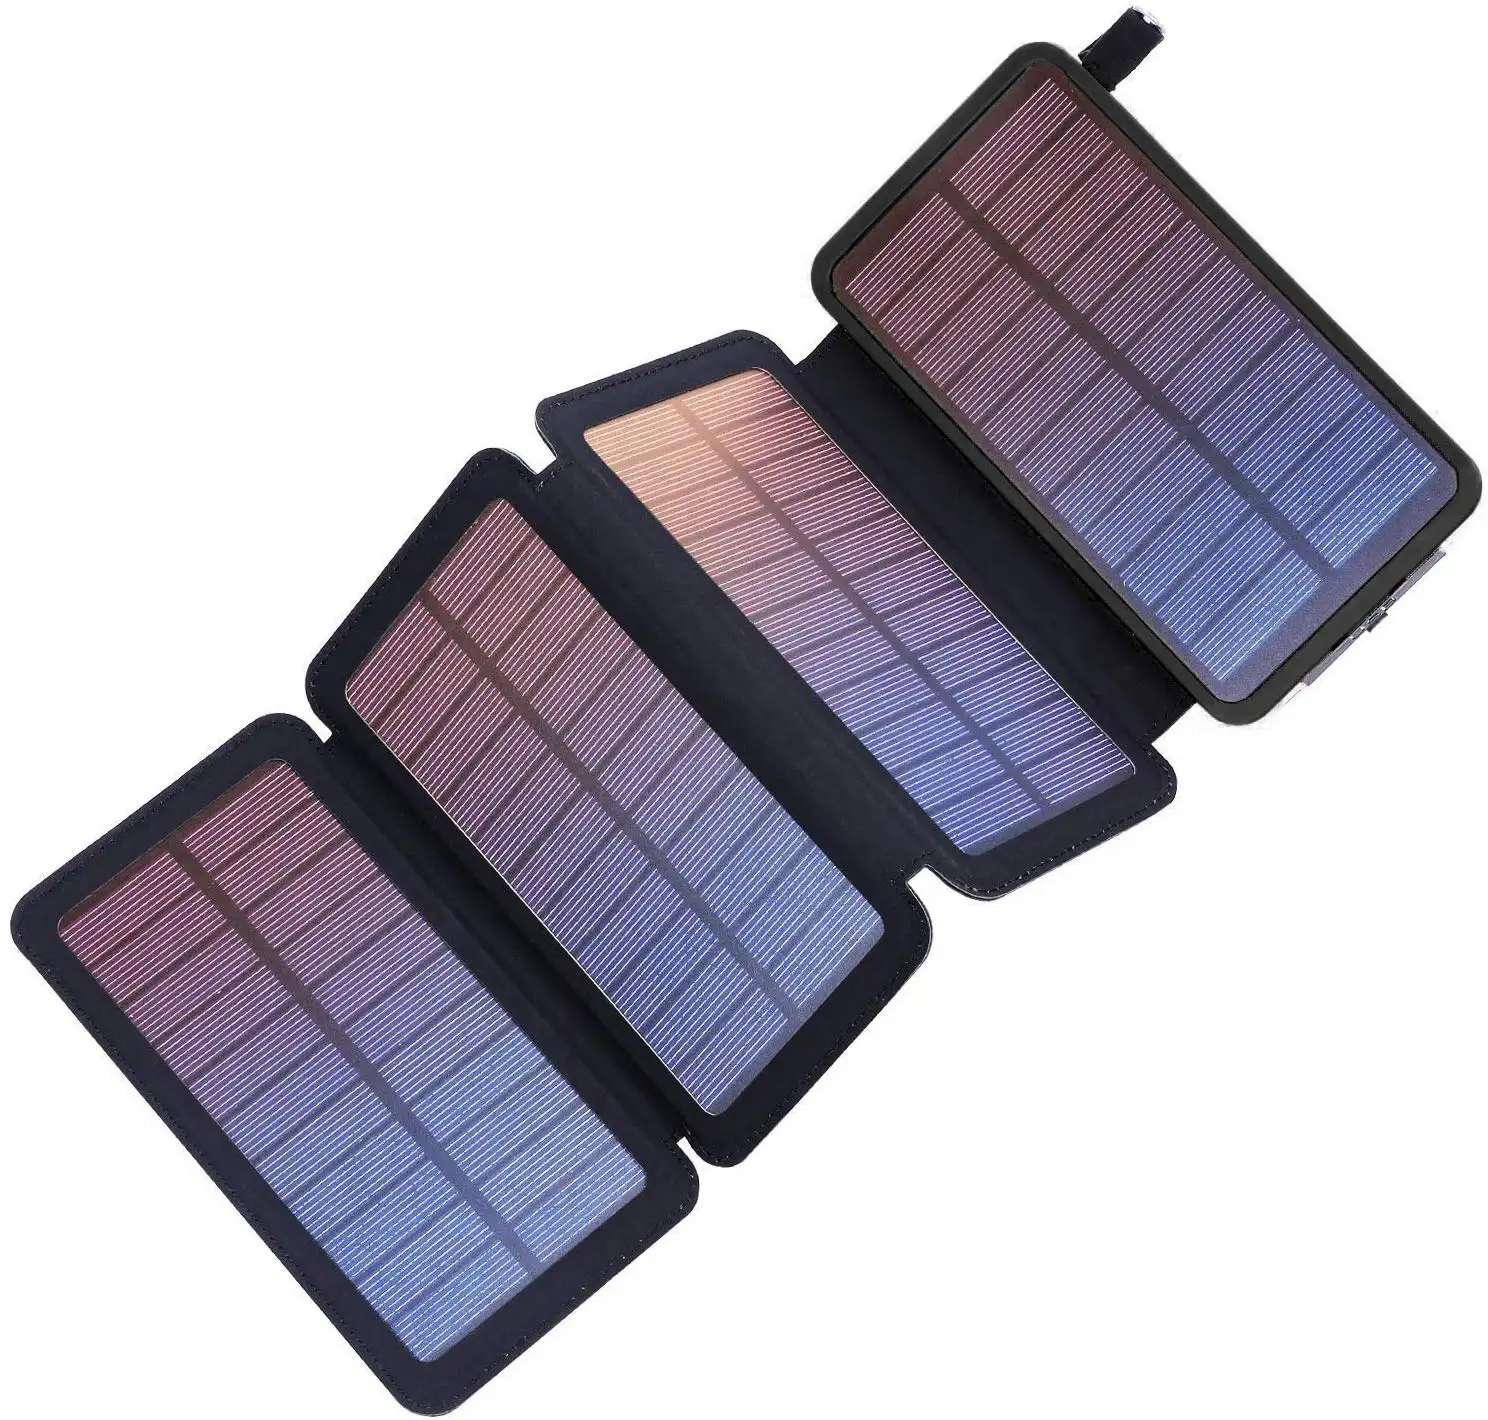 Banca di energia solare pieghevole caricabatterie per cellulare pieghevole a energia solare banca doppia USB impermeabile pieghevole telefono cellulare solare Powerbank